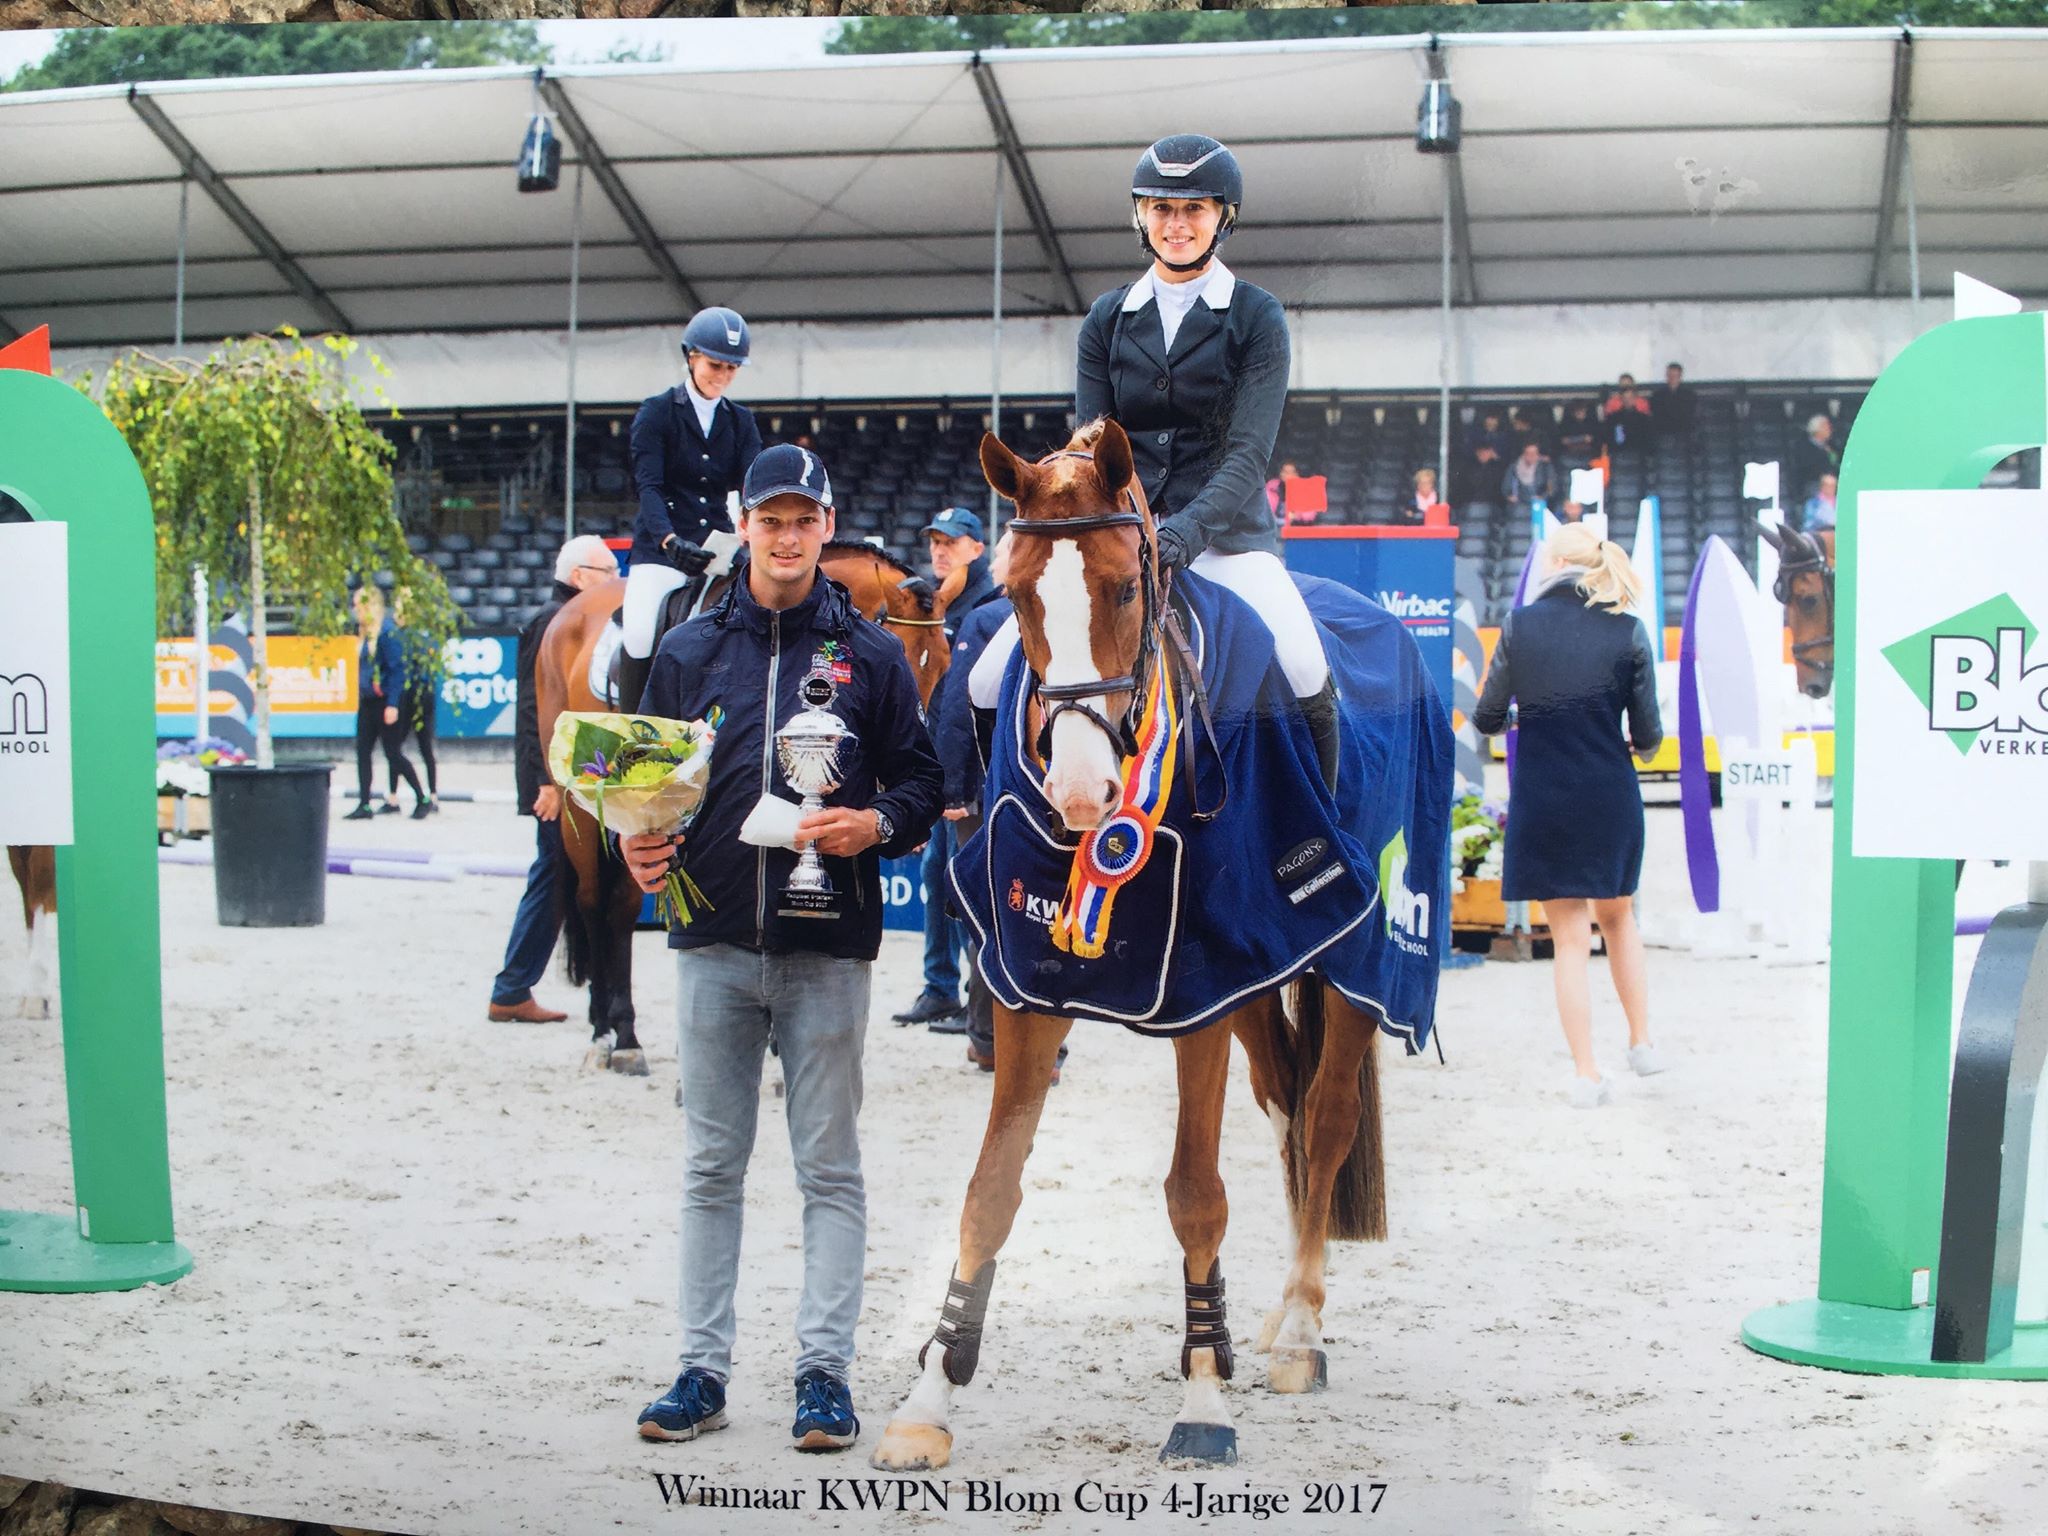 Corona-blog met Nicole Mestrom: "Morgen eindelijk terug met zes paarden op training"